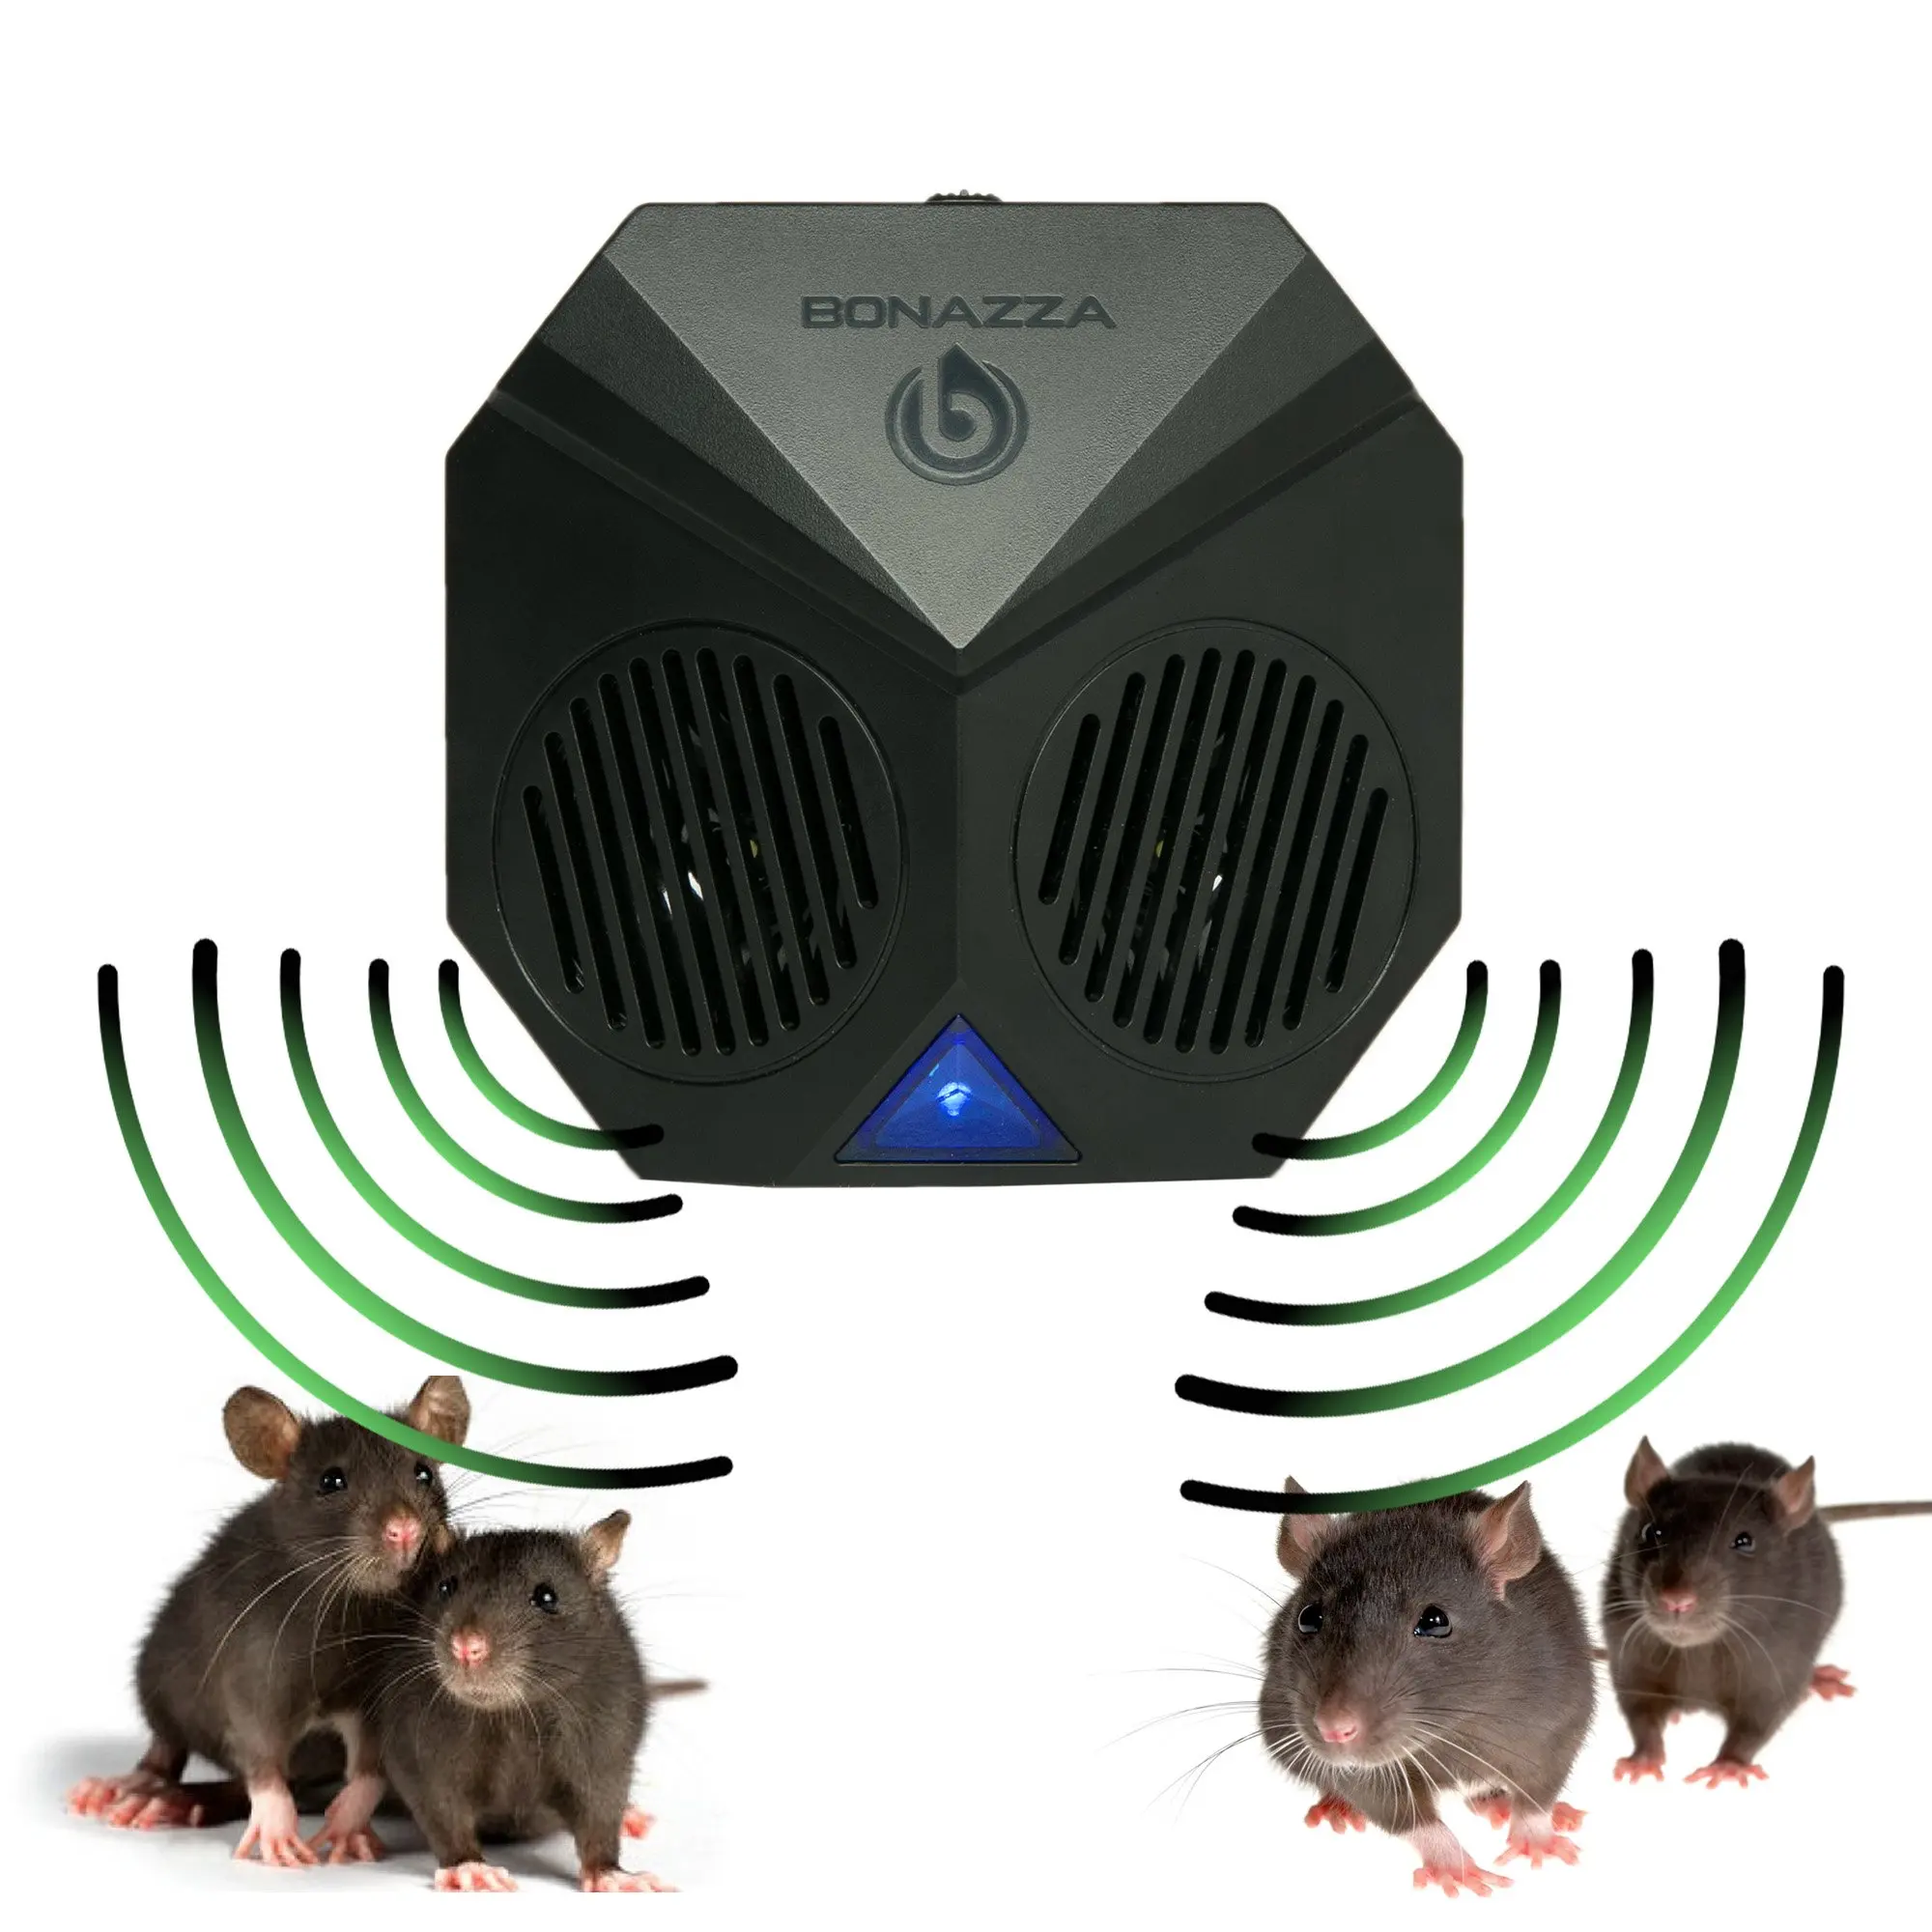 Звук отпугивающий крыс слушать. Электромагнитный отпугиватель крыс и мышей. Звуковой отпугиватель мышей и крыс.